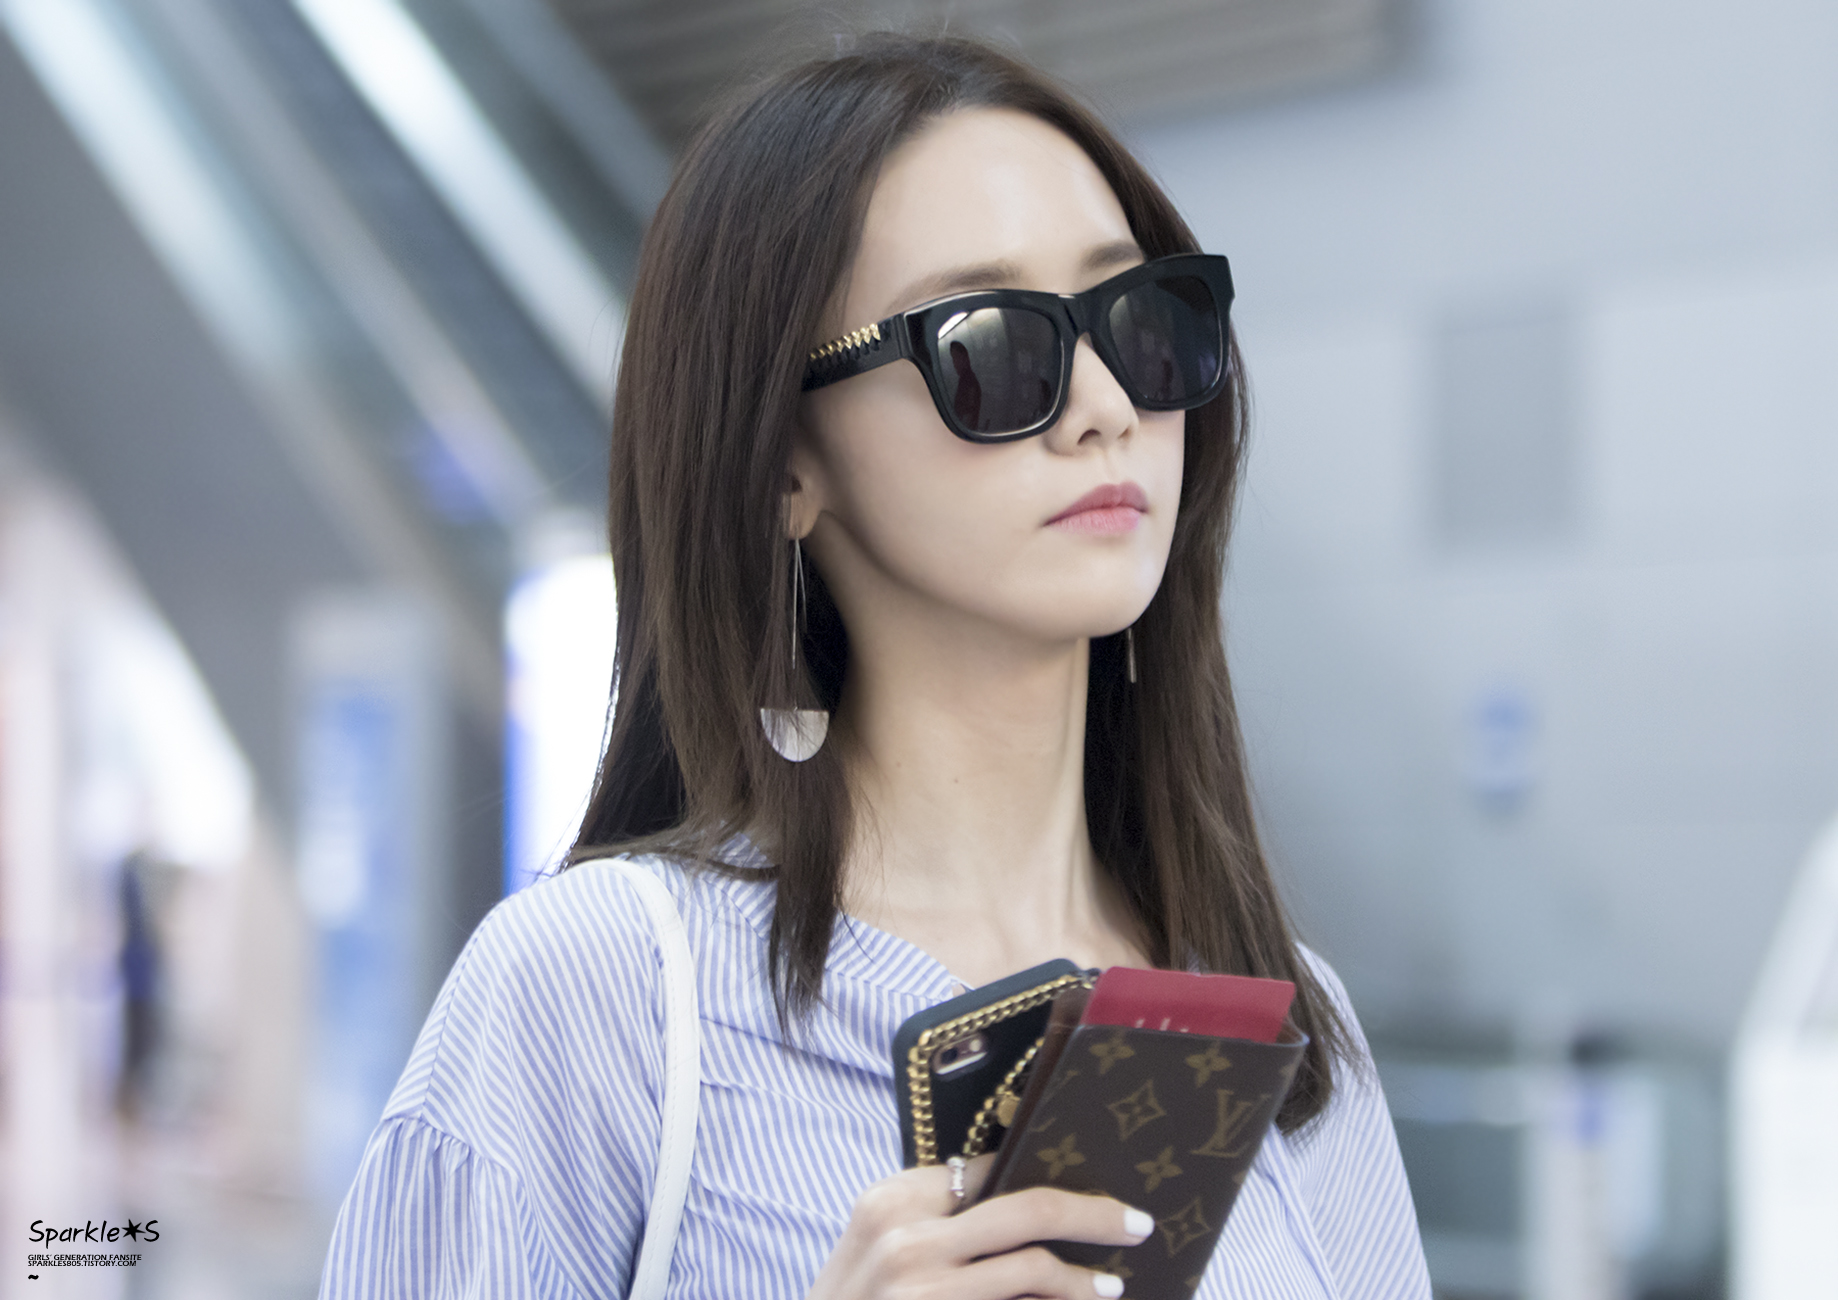 [PIC][24-06-2016]YoonA khởi hành đi Bắc Kinh - Trung Quốc để tham dự "2016 YoonA 1st Fanmeet - BLOSSOM in Beijing" vào sáng nay - Page 4 23065A43592C39492C1877